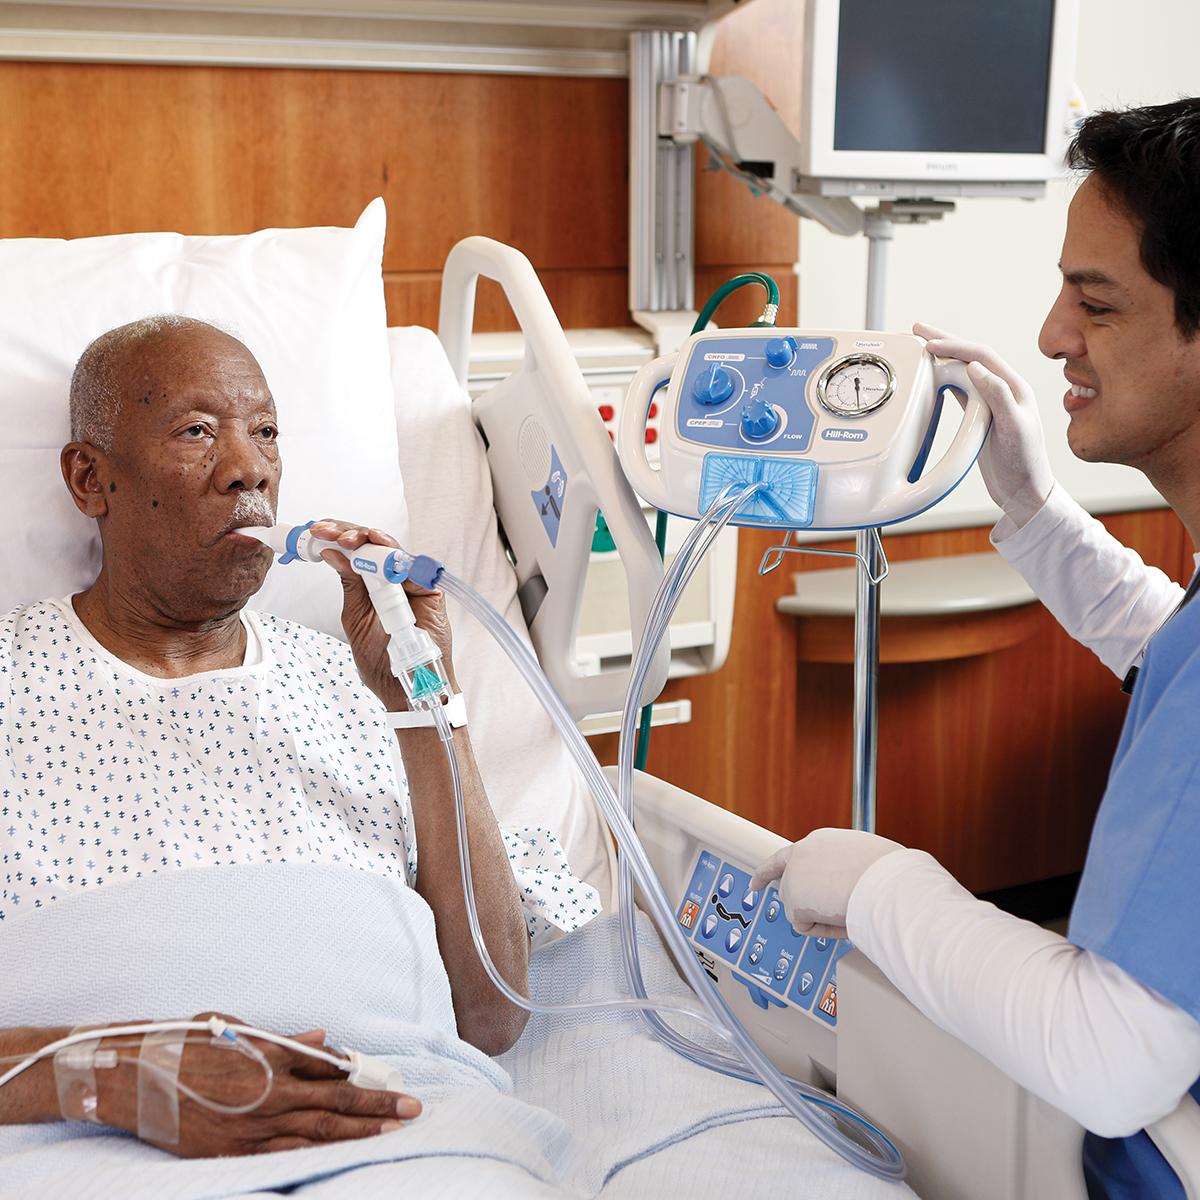 Starszy pacjent na szpitalnym łóżku leczony za pomocą systemu MetaNeb, lekarz pozostaje w pobliżu